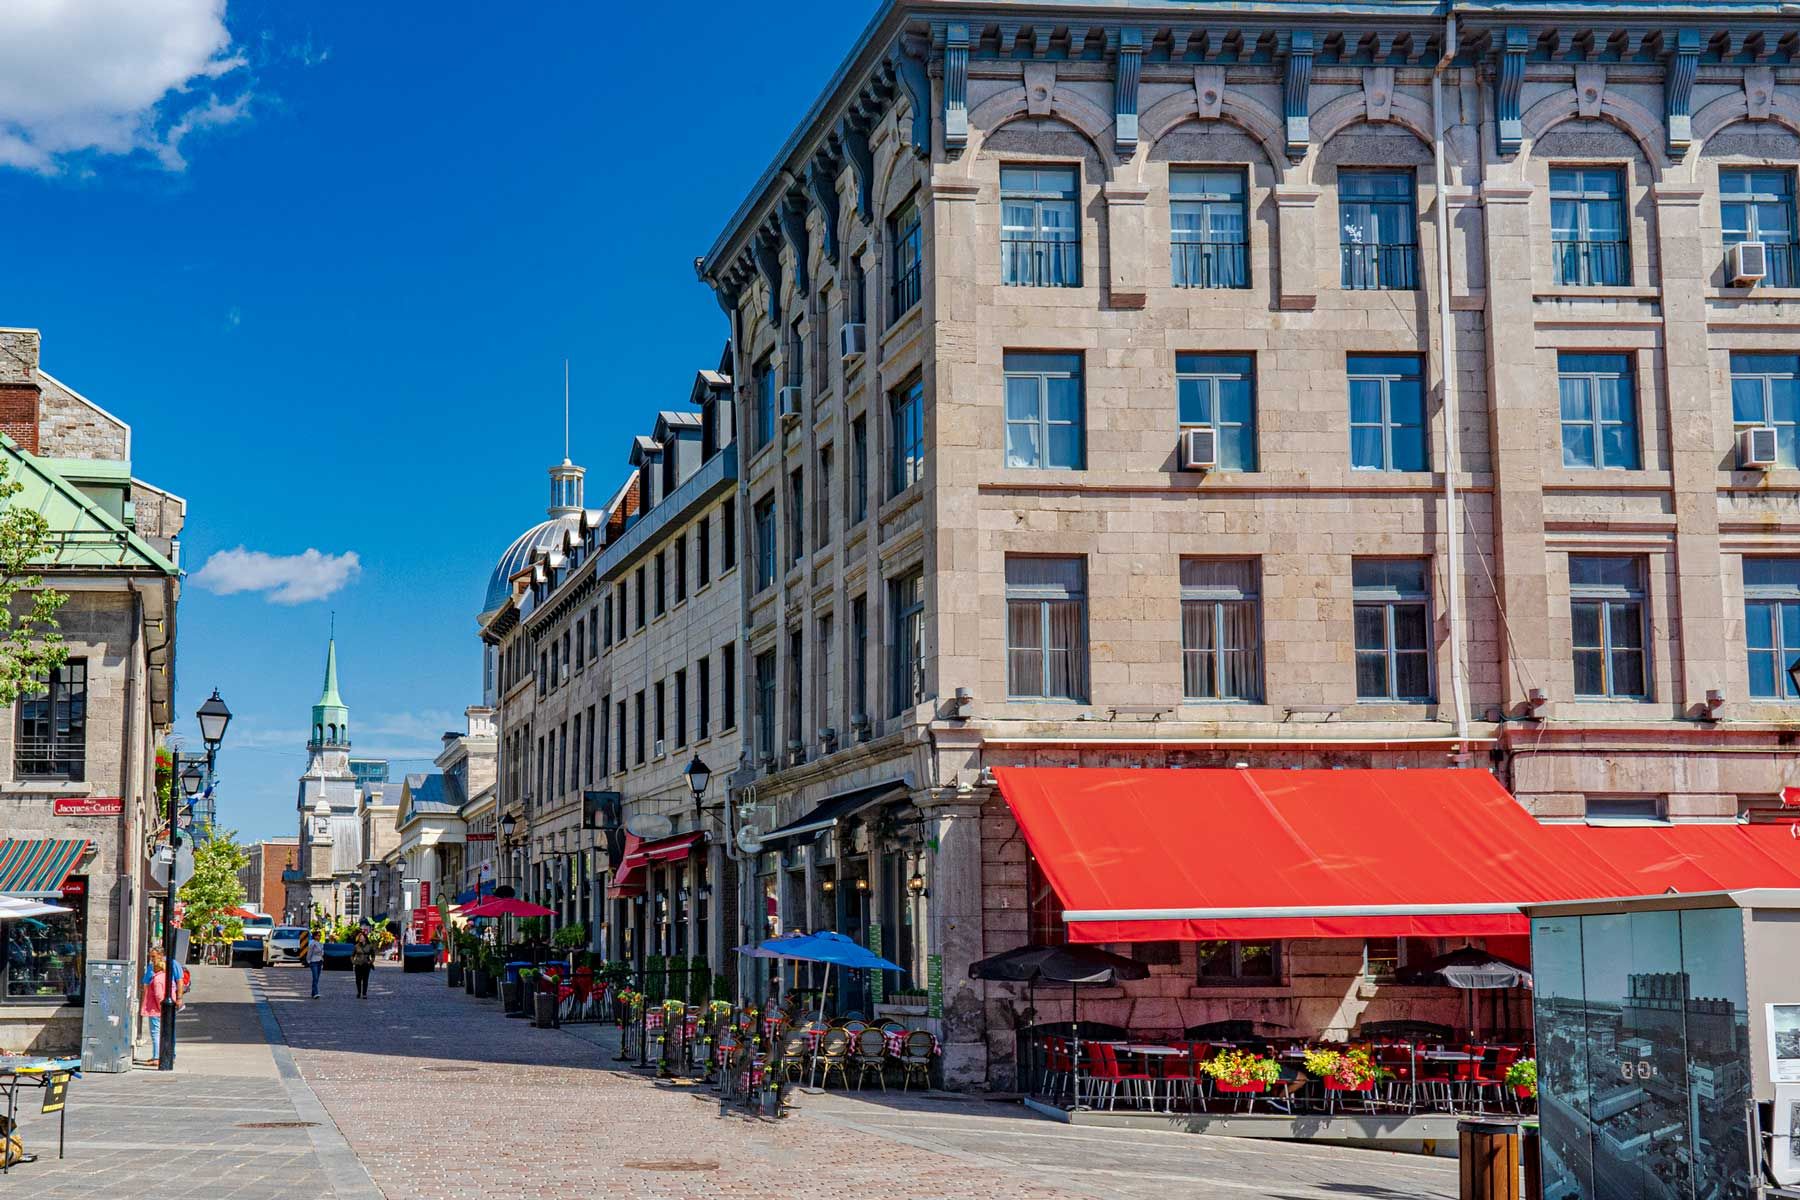 Das Bild zeigt eine typische Straße in der Altstadt, gesäumt von alten Gebäuden und Geschäften